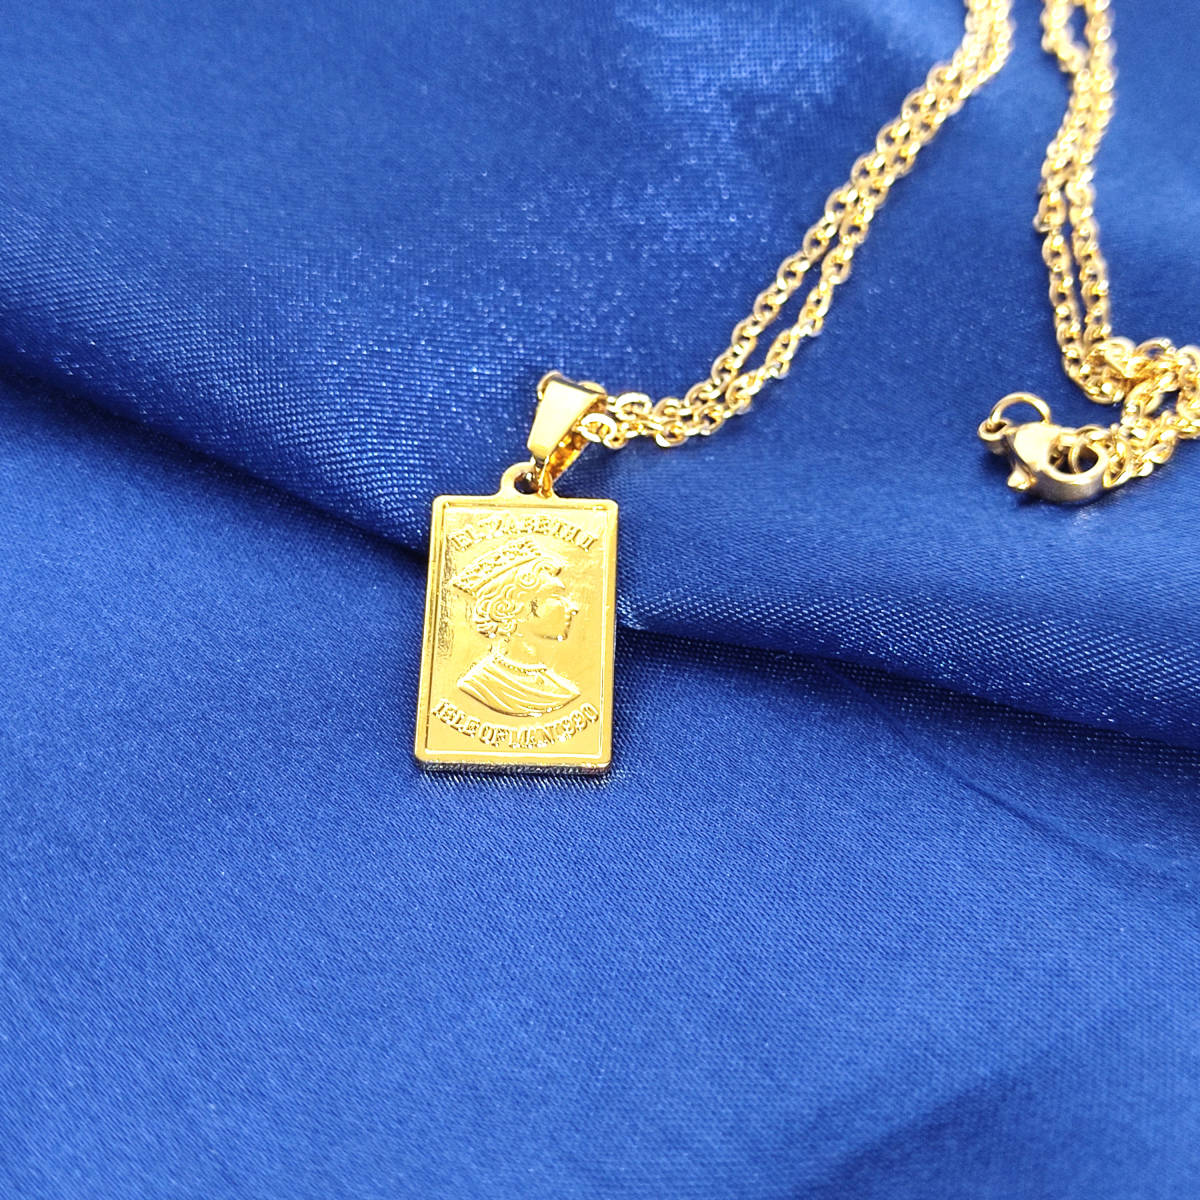 Necklace レディース メンズ エリザベスコイン インゴット ネックレス 18k Gold Plated 鍍金 141の画像1